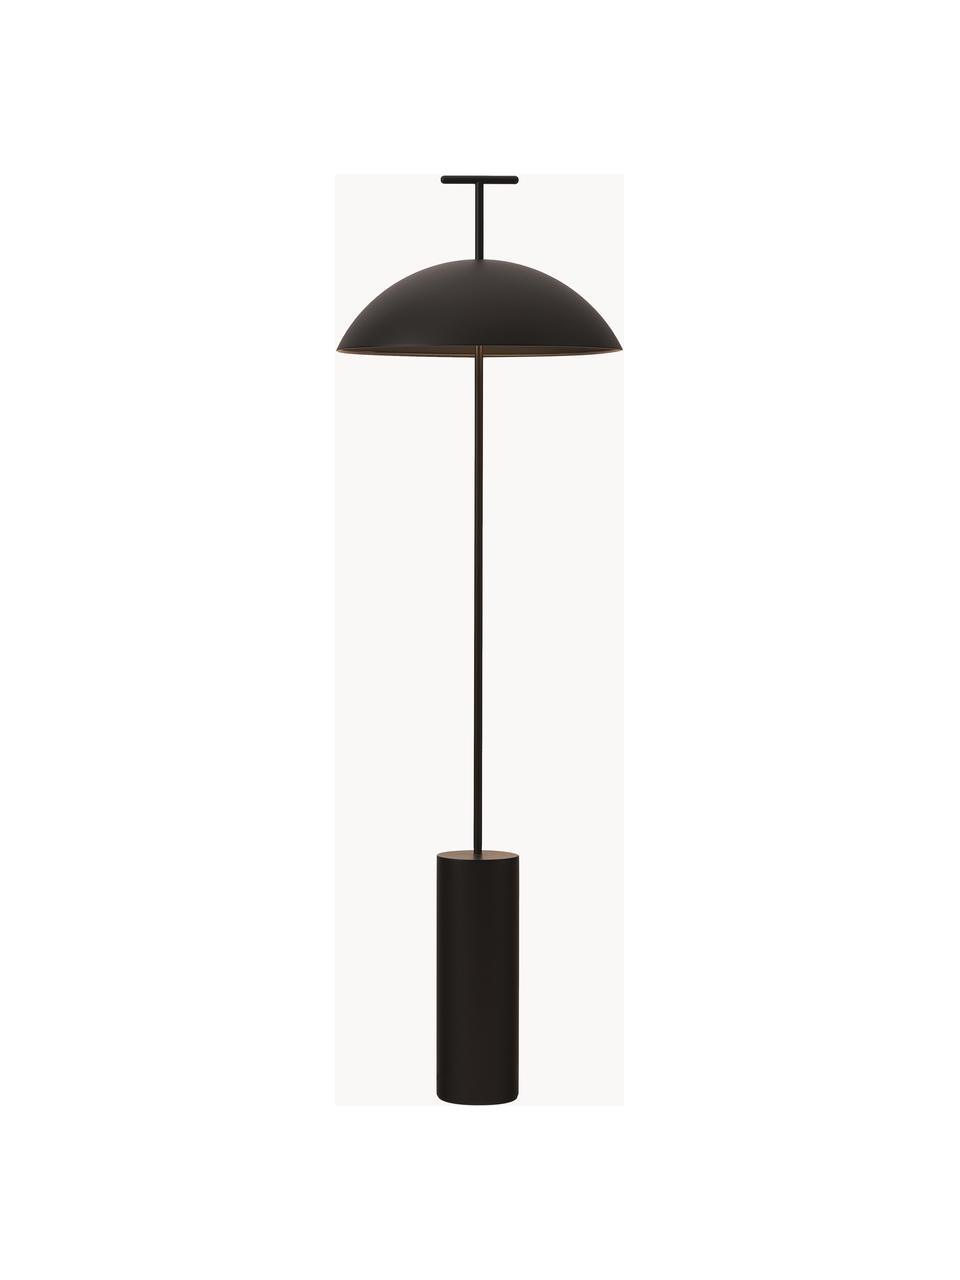 Lampa podłogowa LED z funkcją przyciemniania Geen-A, Czarny, W 132 cm